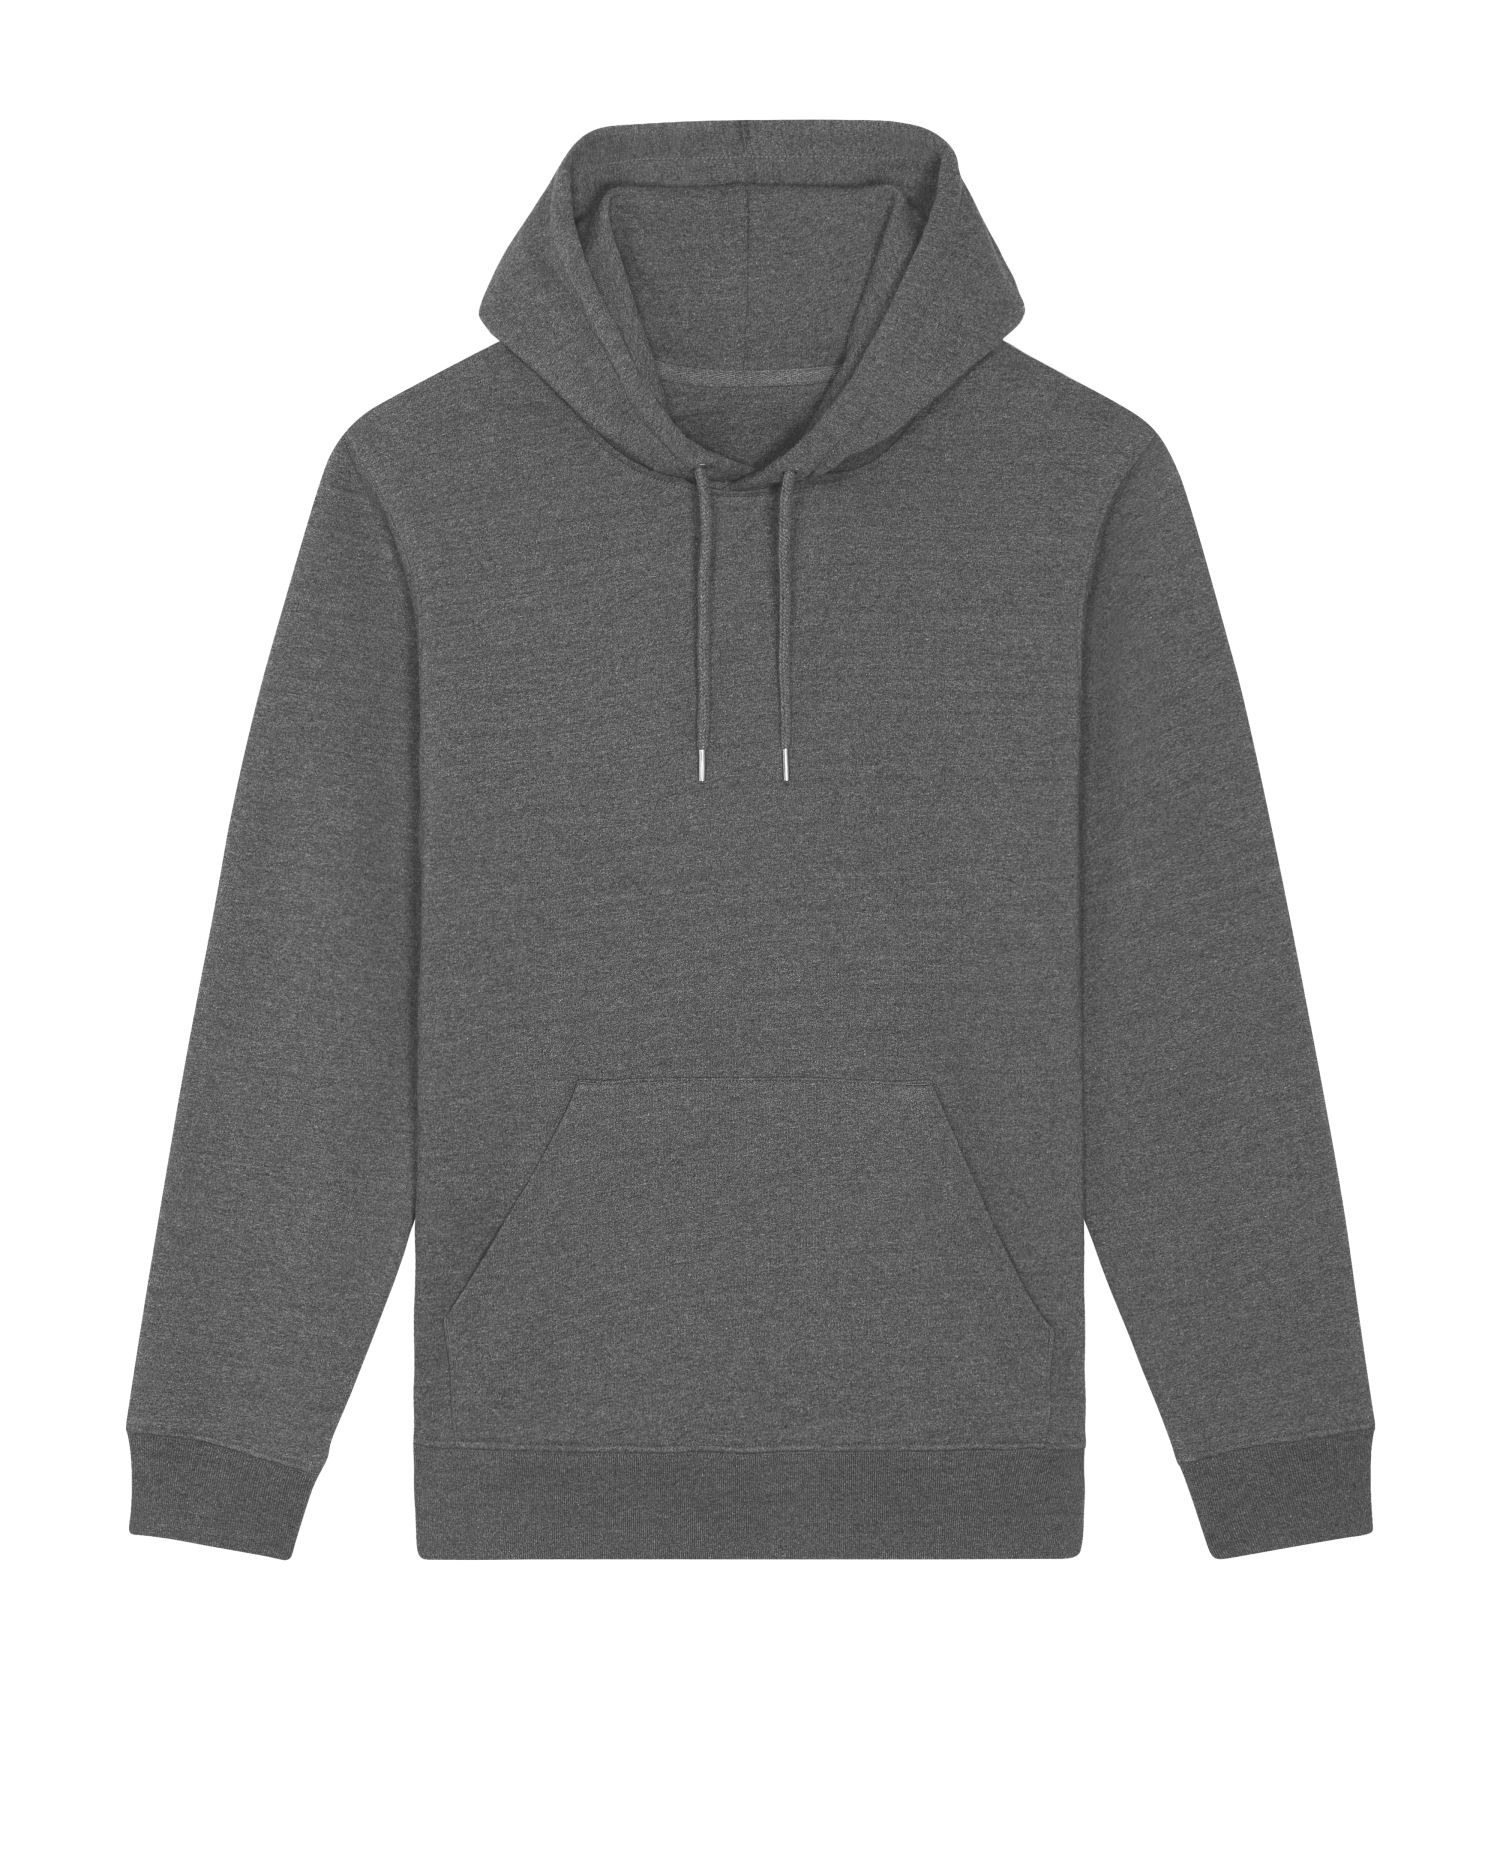 Hoodie sweatshirts RE-Cruiser in Farbe RE-Black